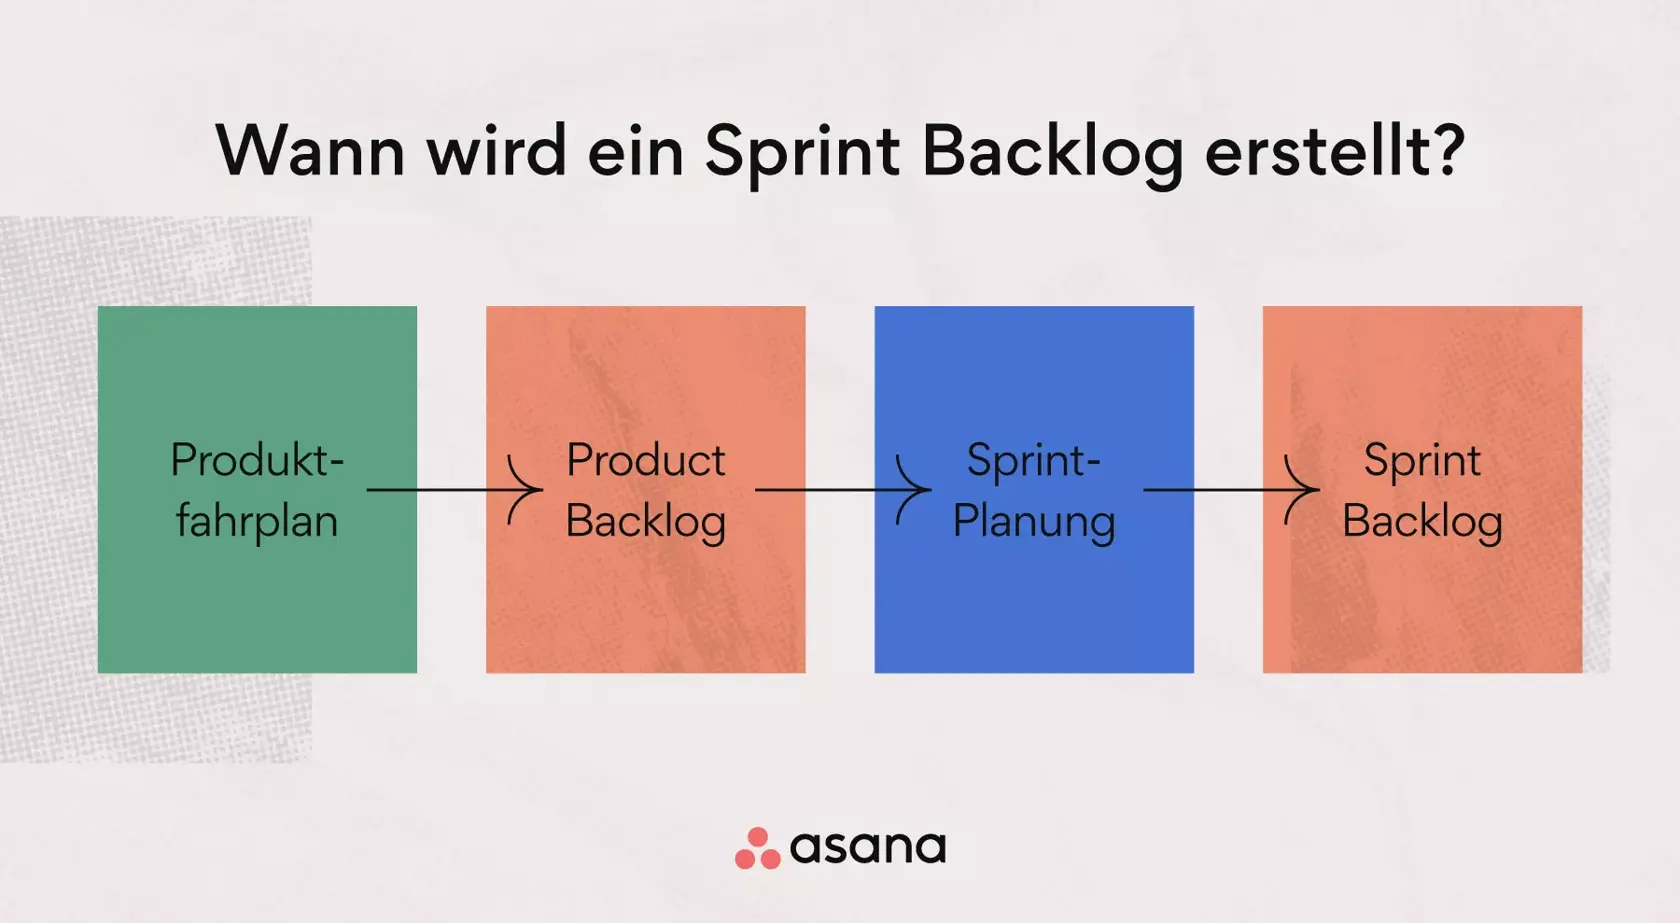 Wann wird ein Sprint Backlog erstellt?